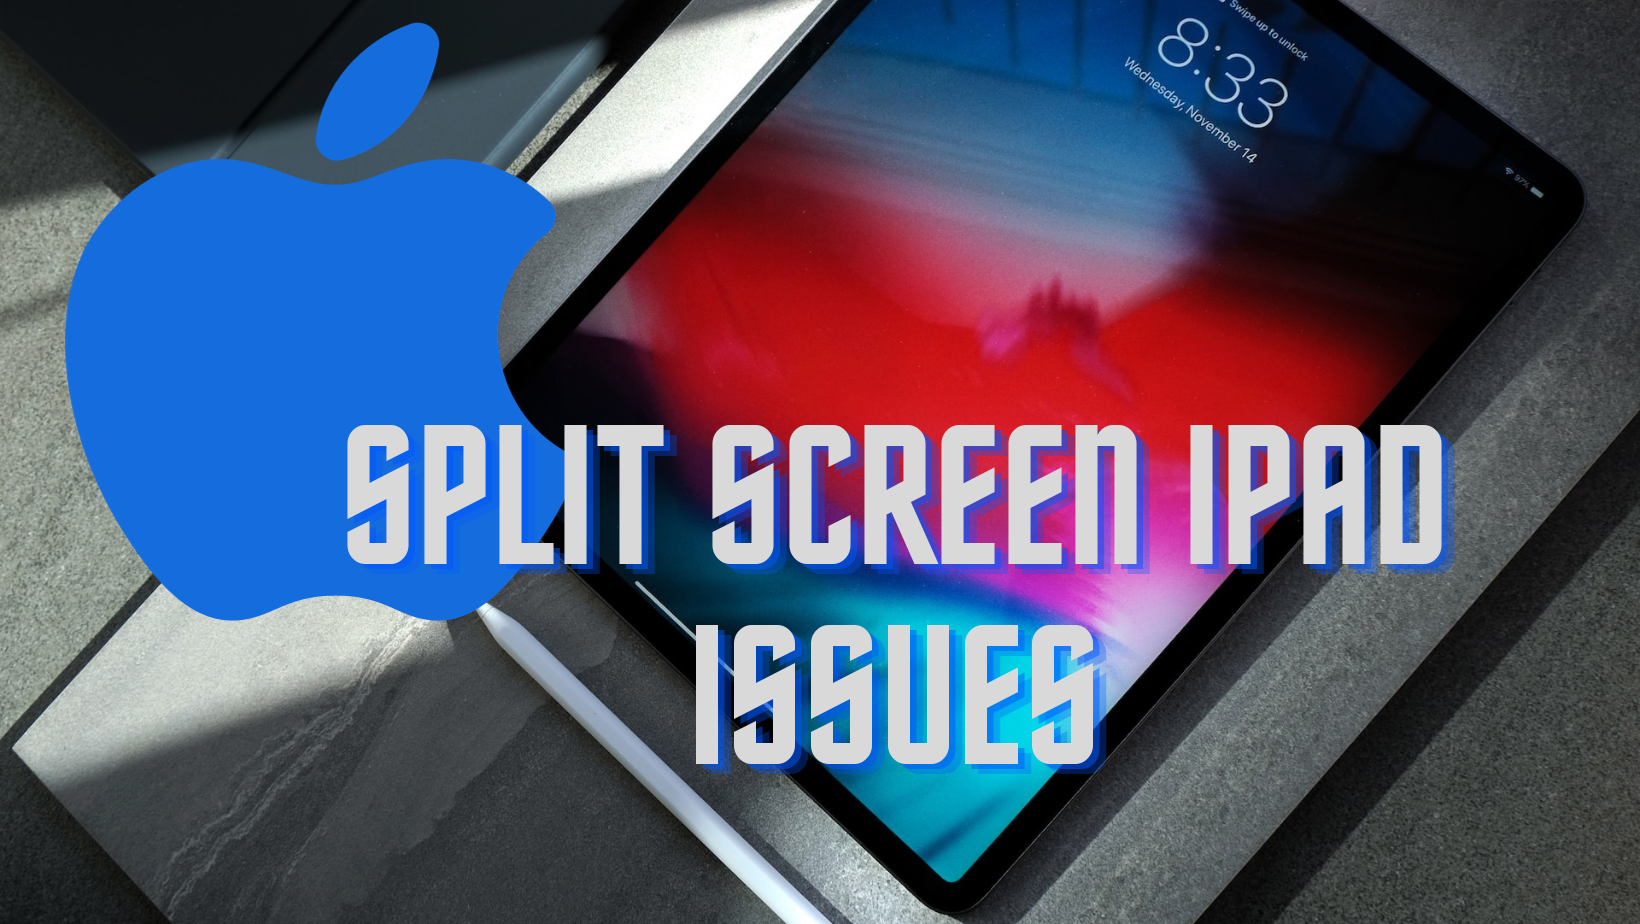 split screen iPad